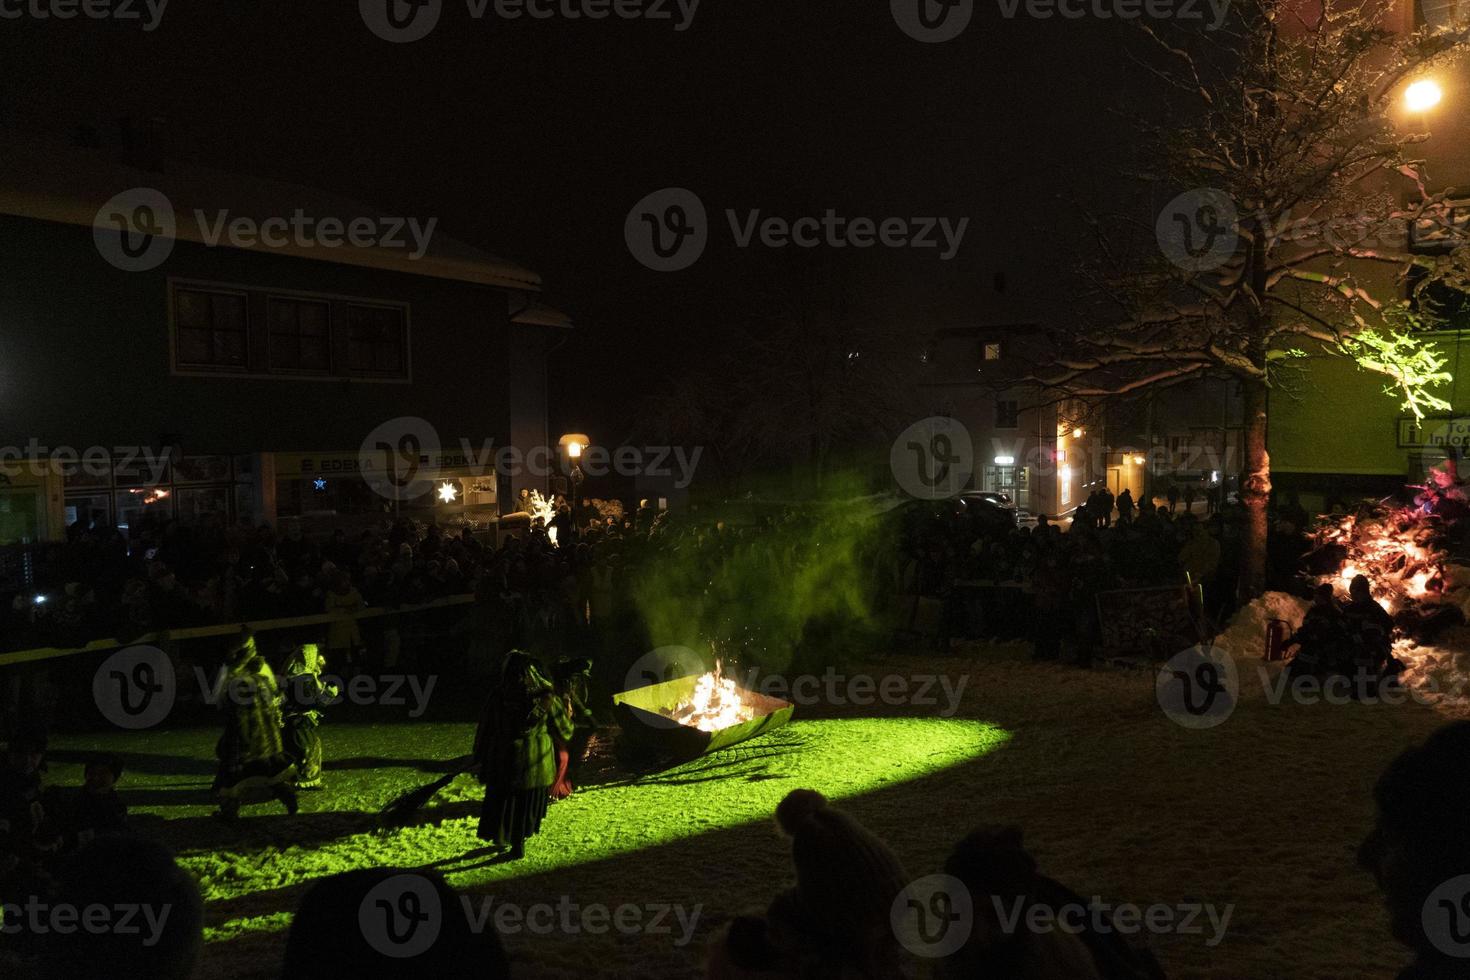 neuschoenau, allemagne - 5 janvier 2019 - célébration nocturne lousnacht avec waldgeister esprit forestier dans le village de bavière photo